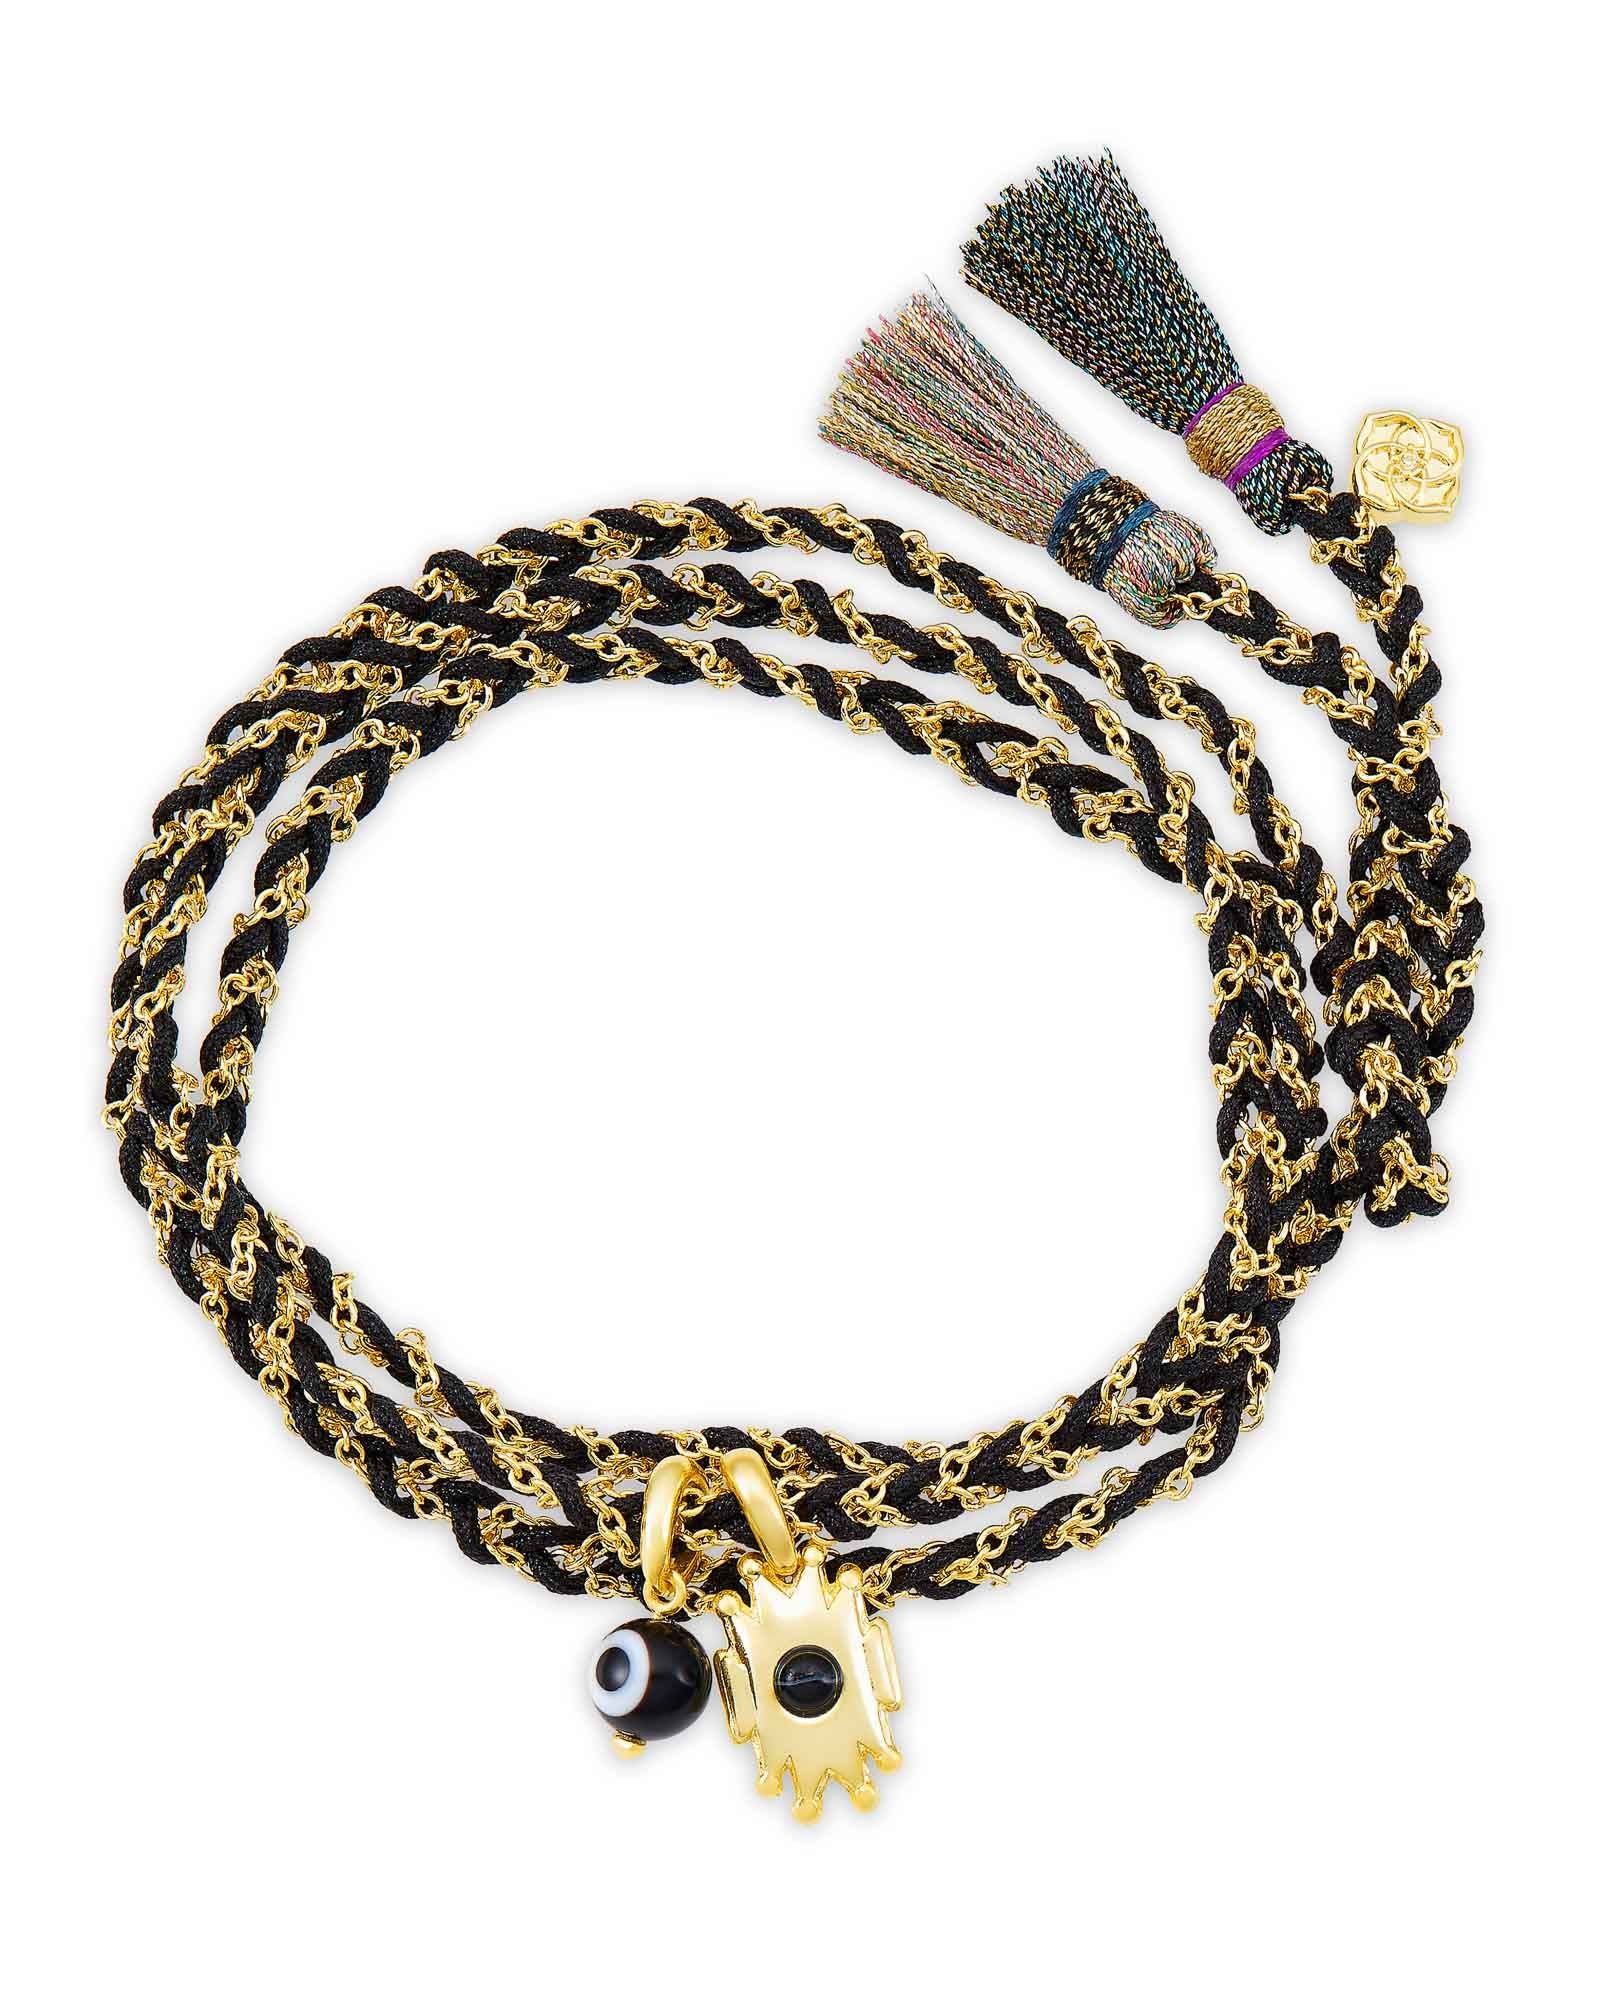 Shiva Wrap Bracelet in Gold Black Banded Agate